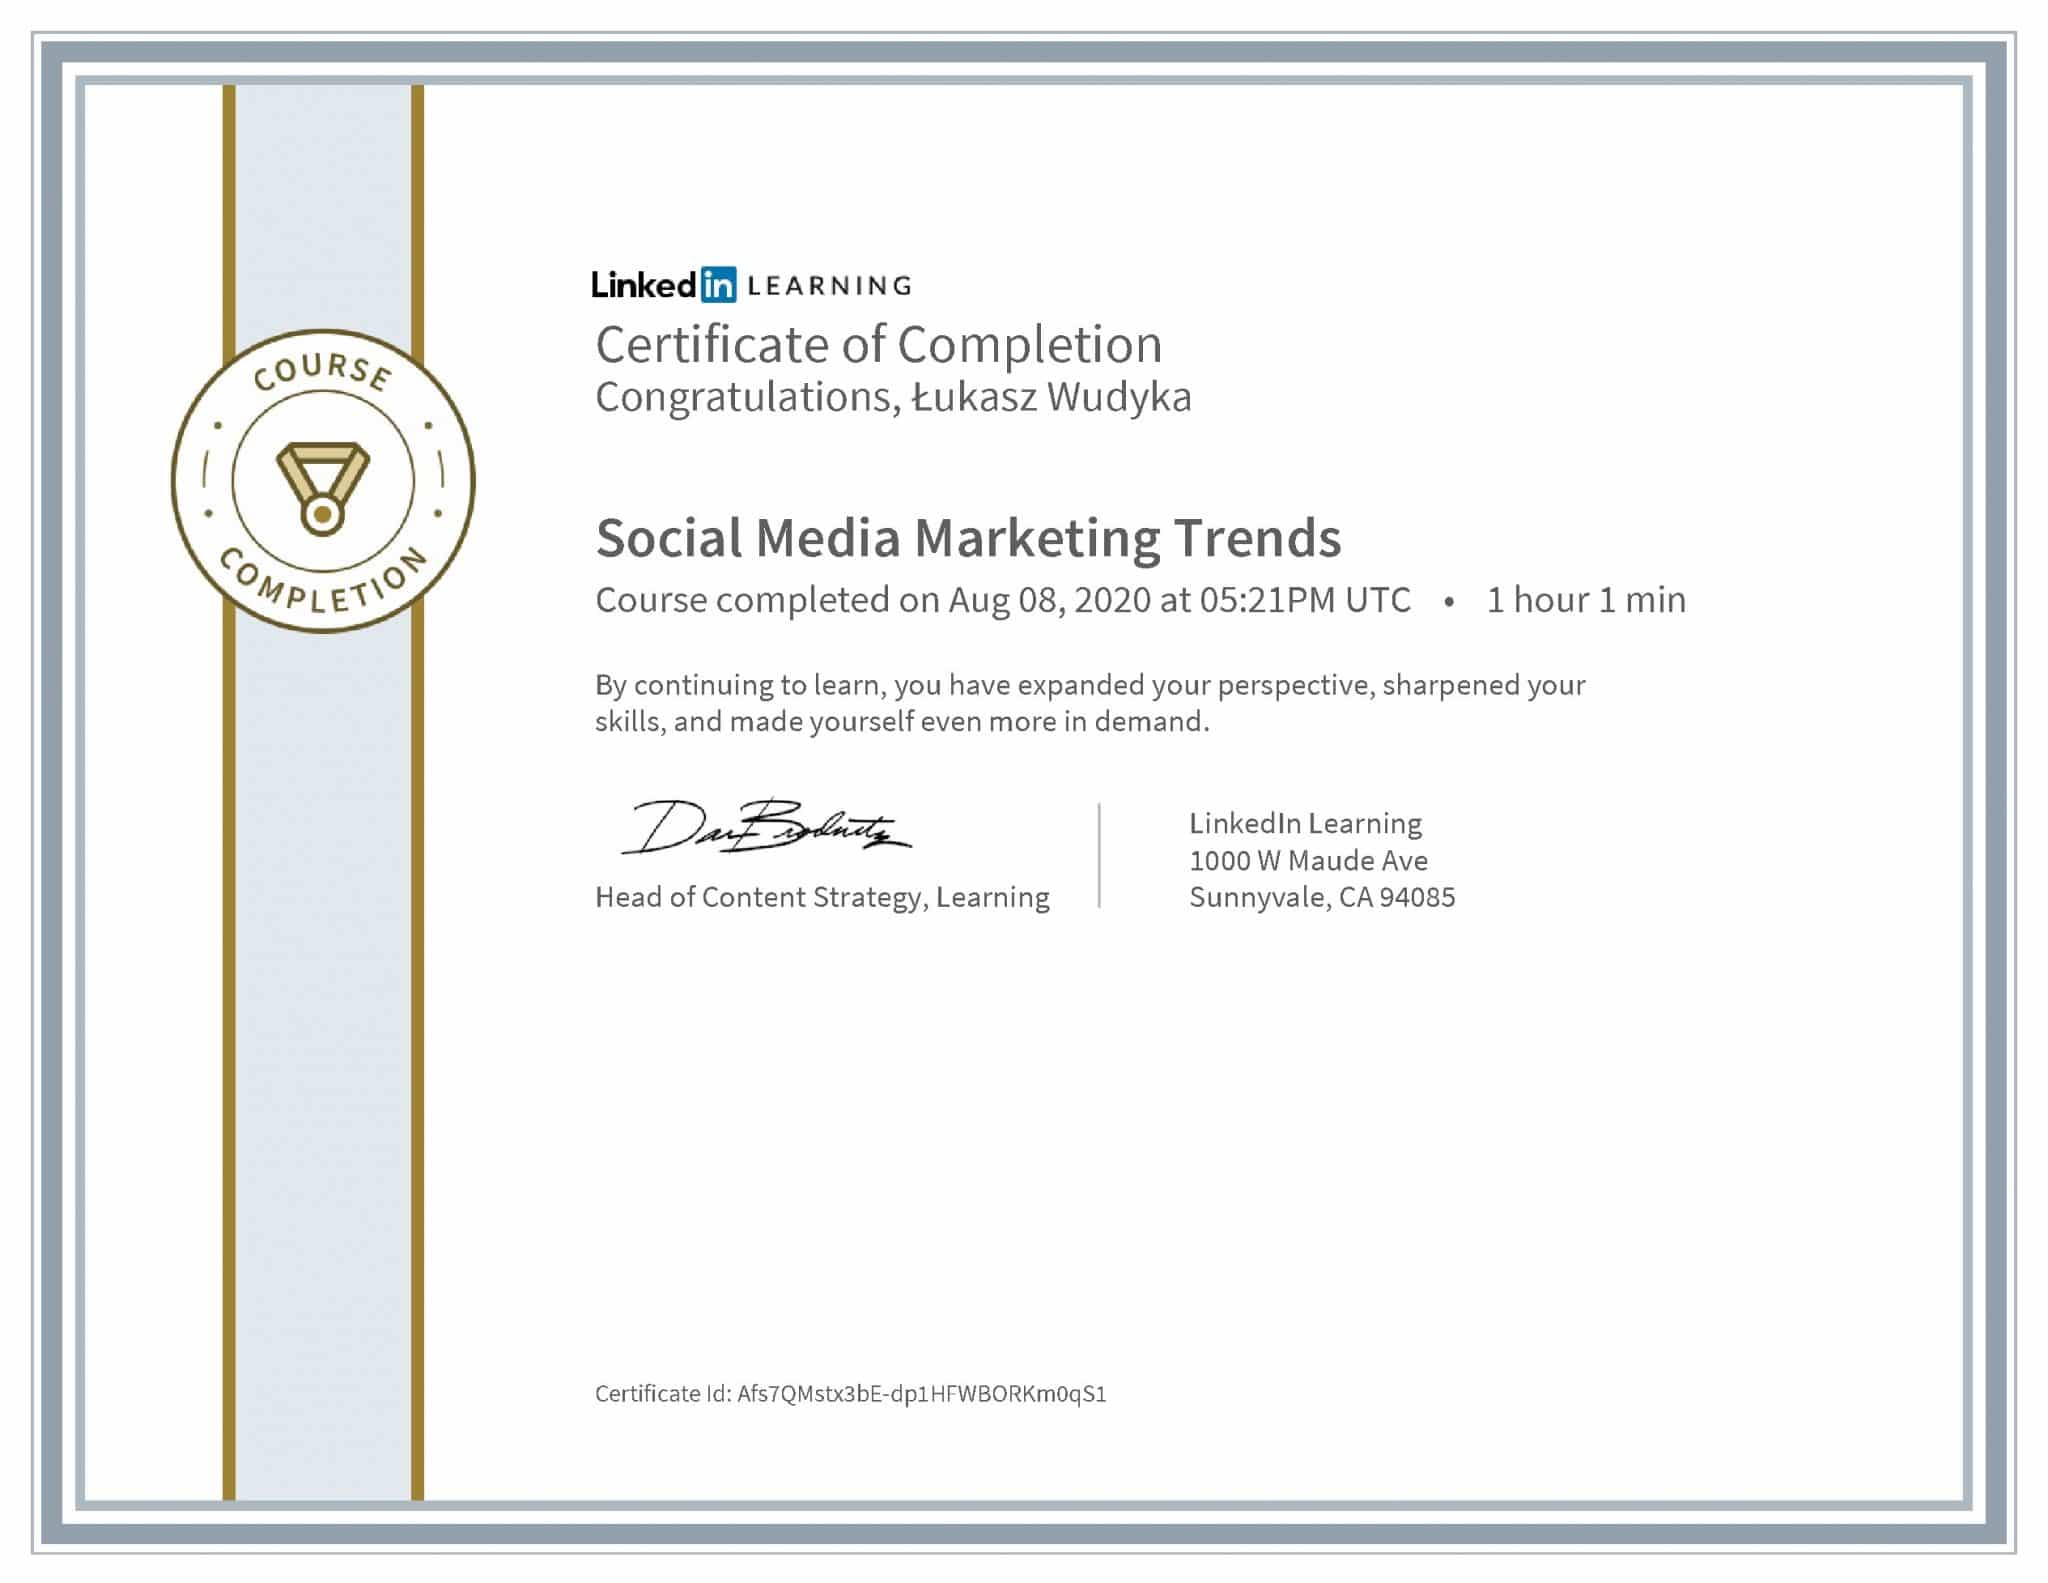 Łukasz Wudyka certyfikat LinkedIn Social Media Marketing Trends